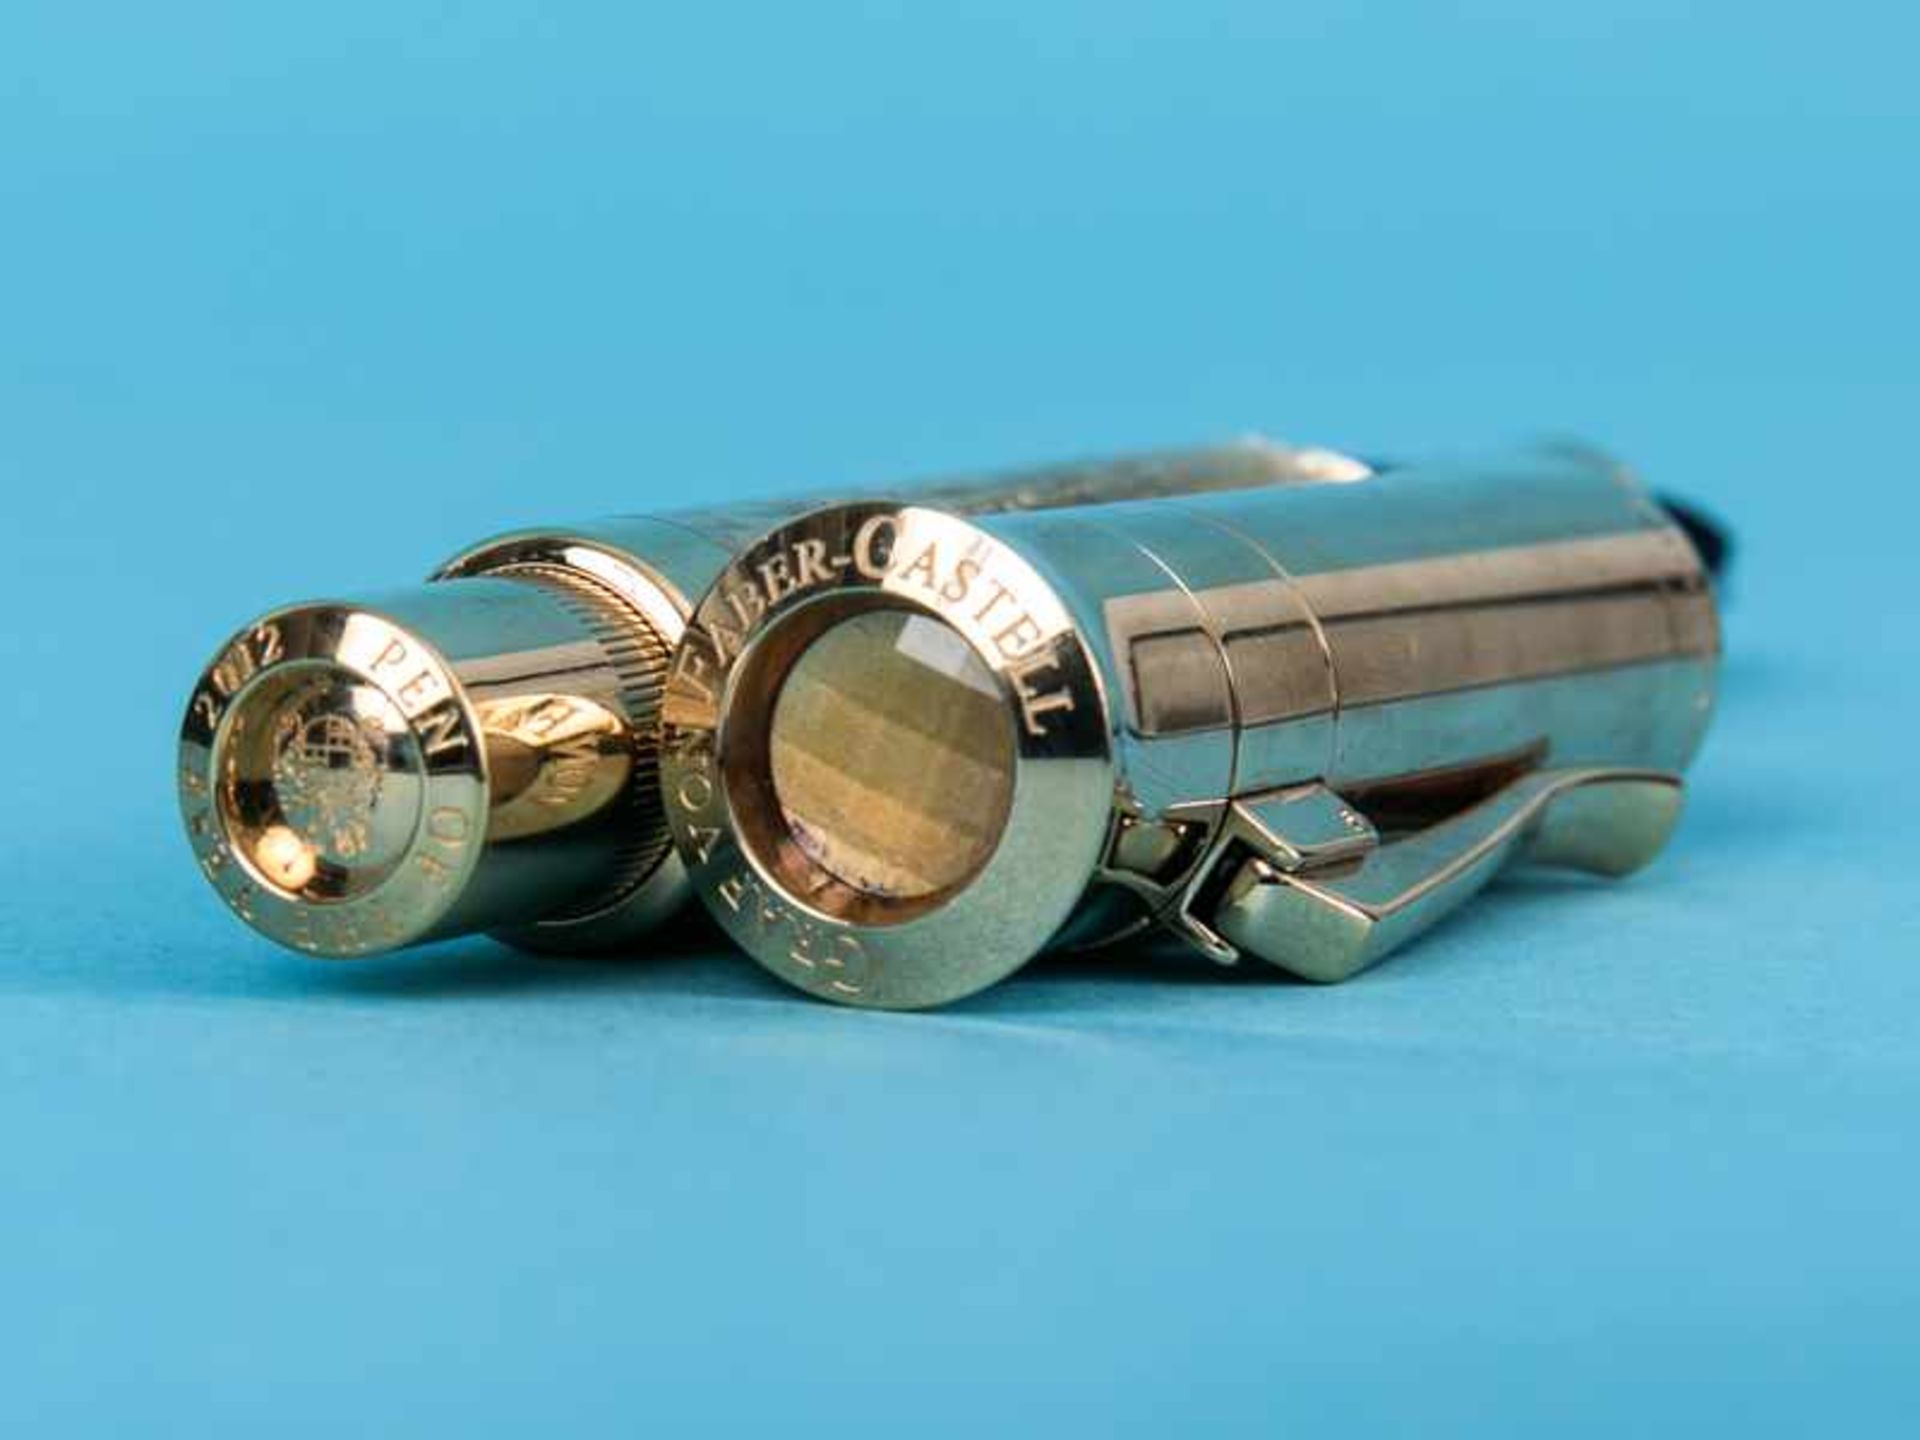 Kolben-Füllfederhalter "Pen of the Year" 2012, Handarbeit aus der Manufaktur Graf von Faber-Castell. - Image 4 of 10